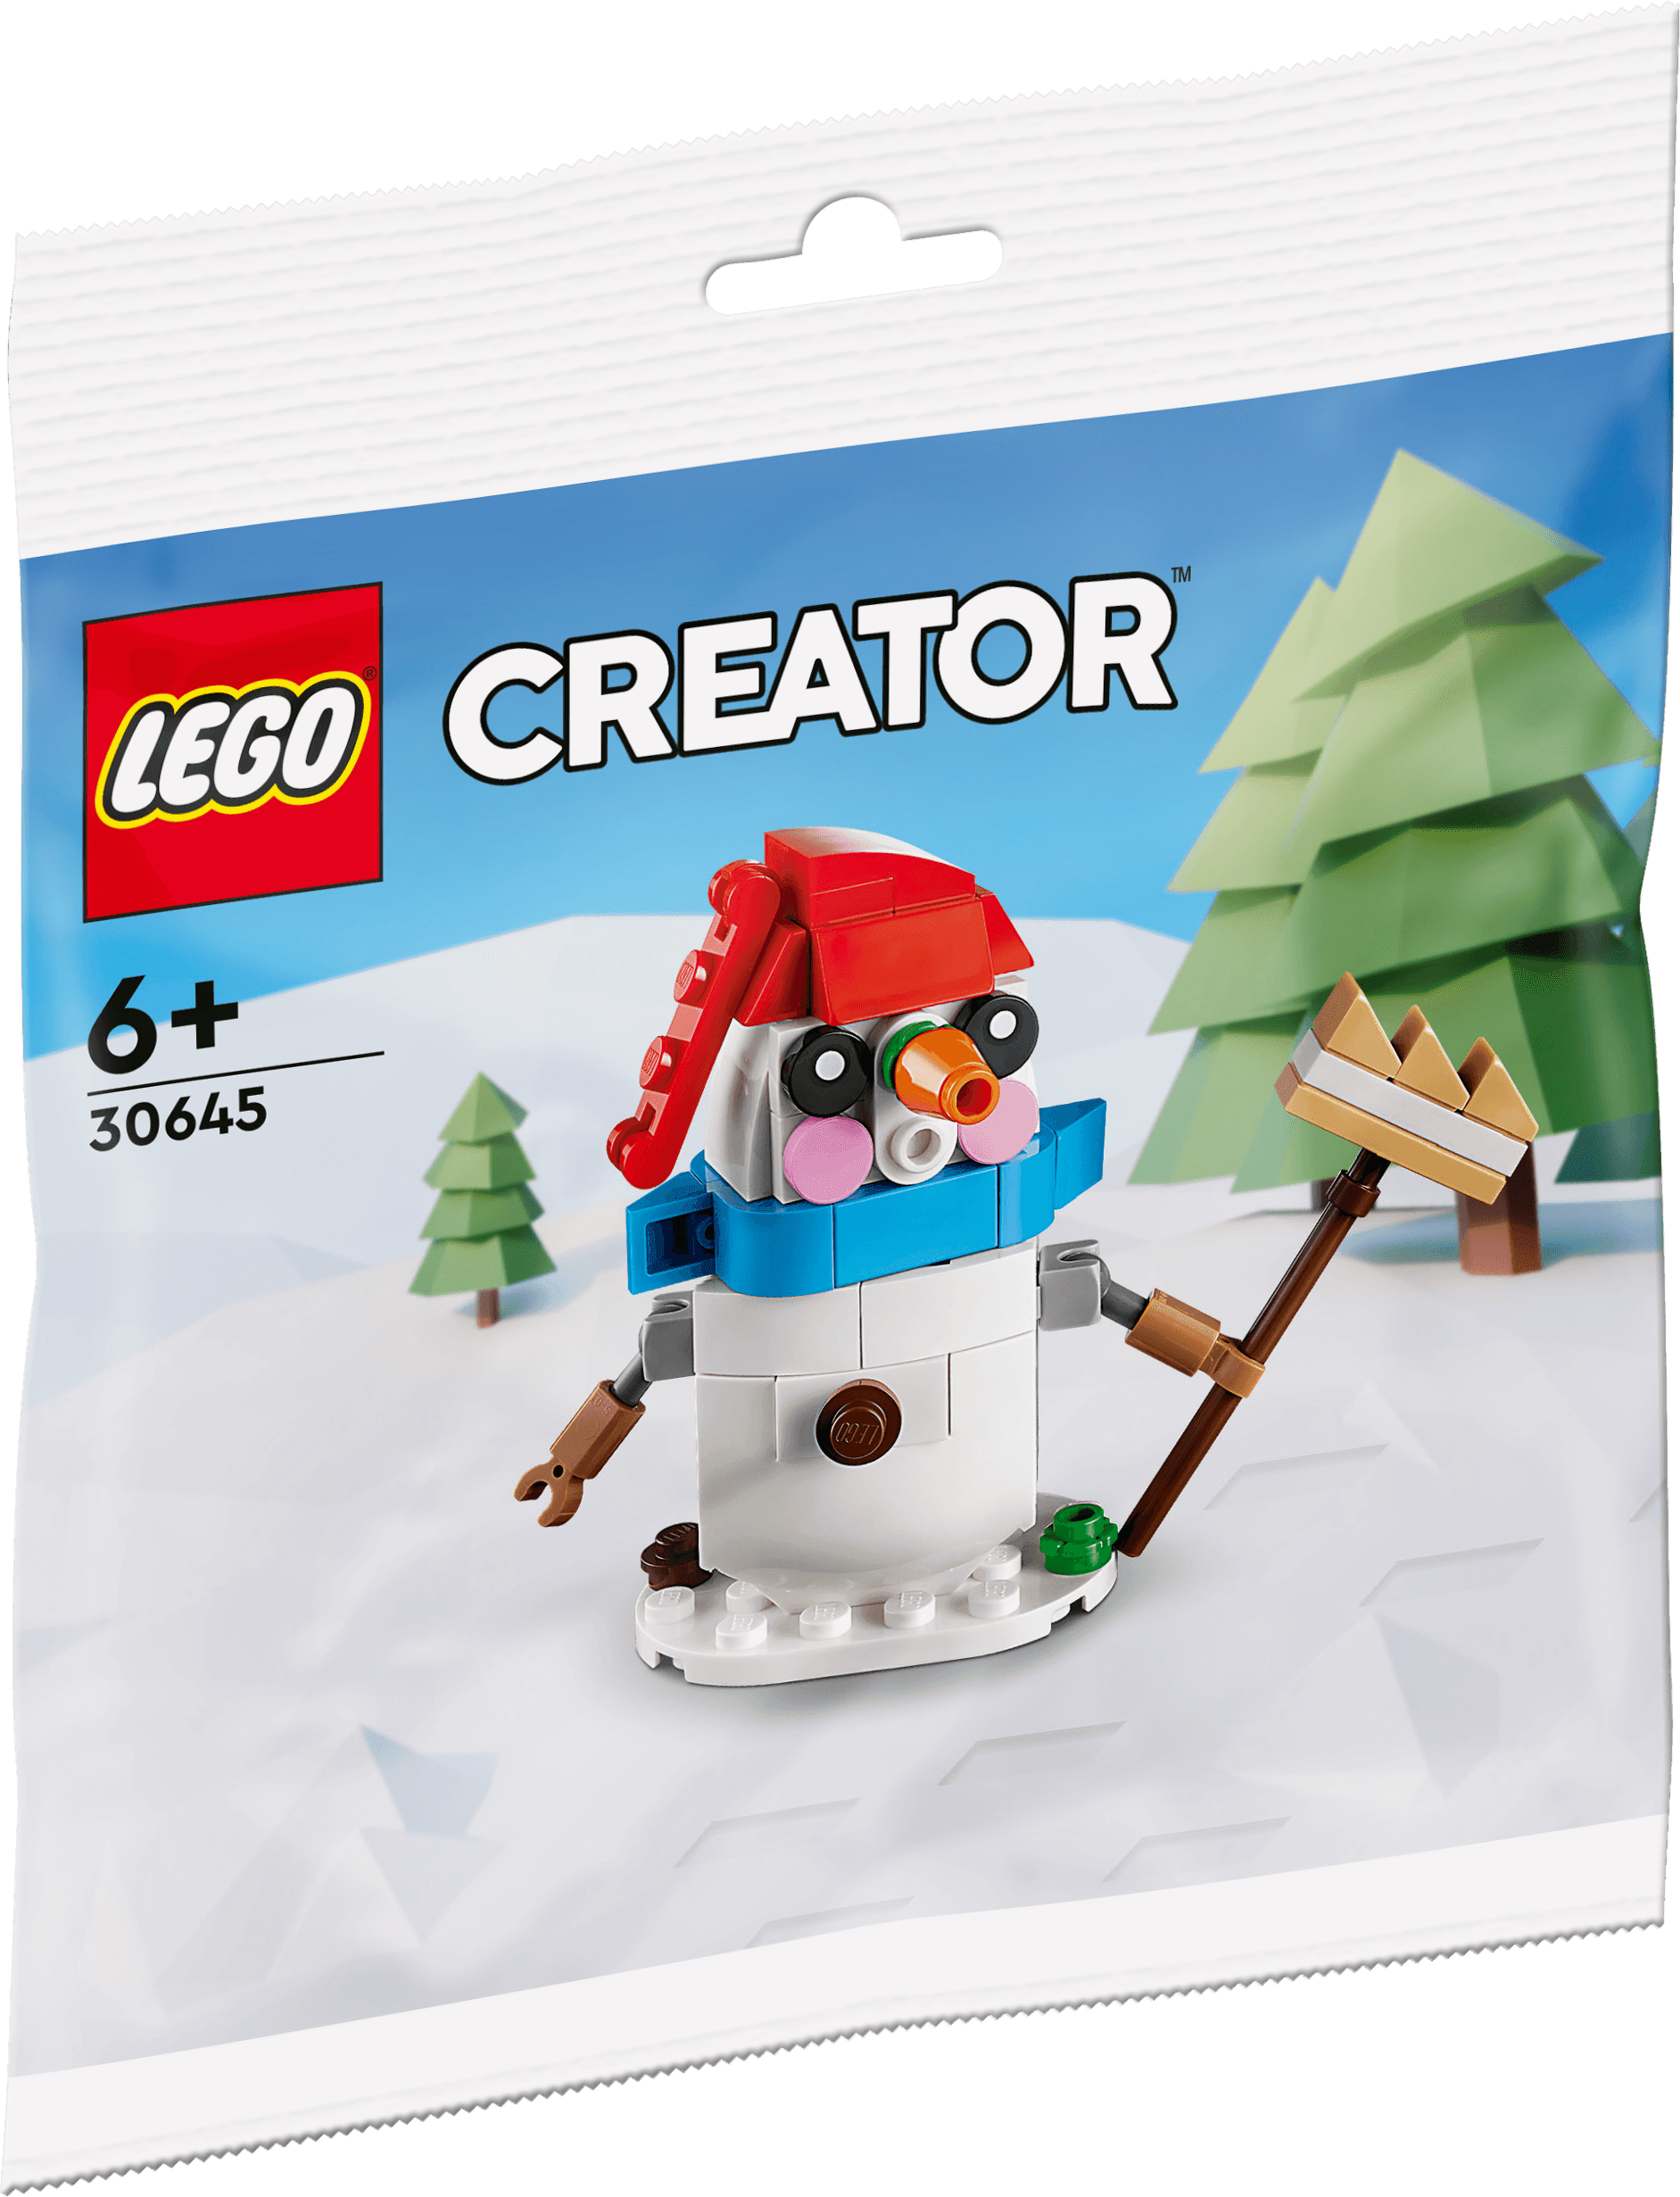 LEGO Sneeuwpop 30645 Creator LEGO CREATOR @ 2TTOYS LEGO €. 6.49